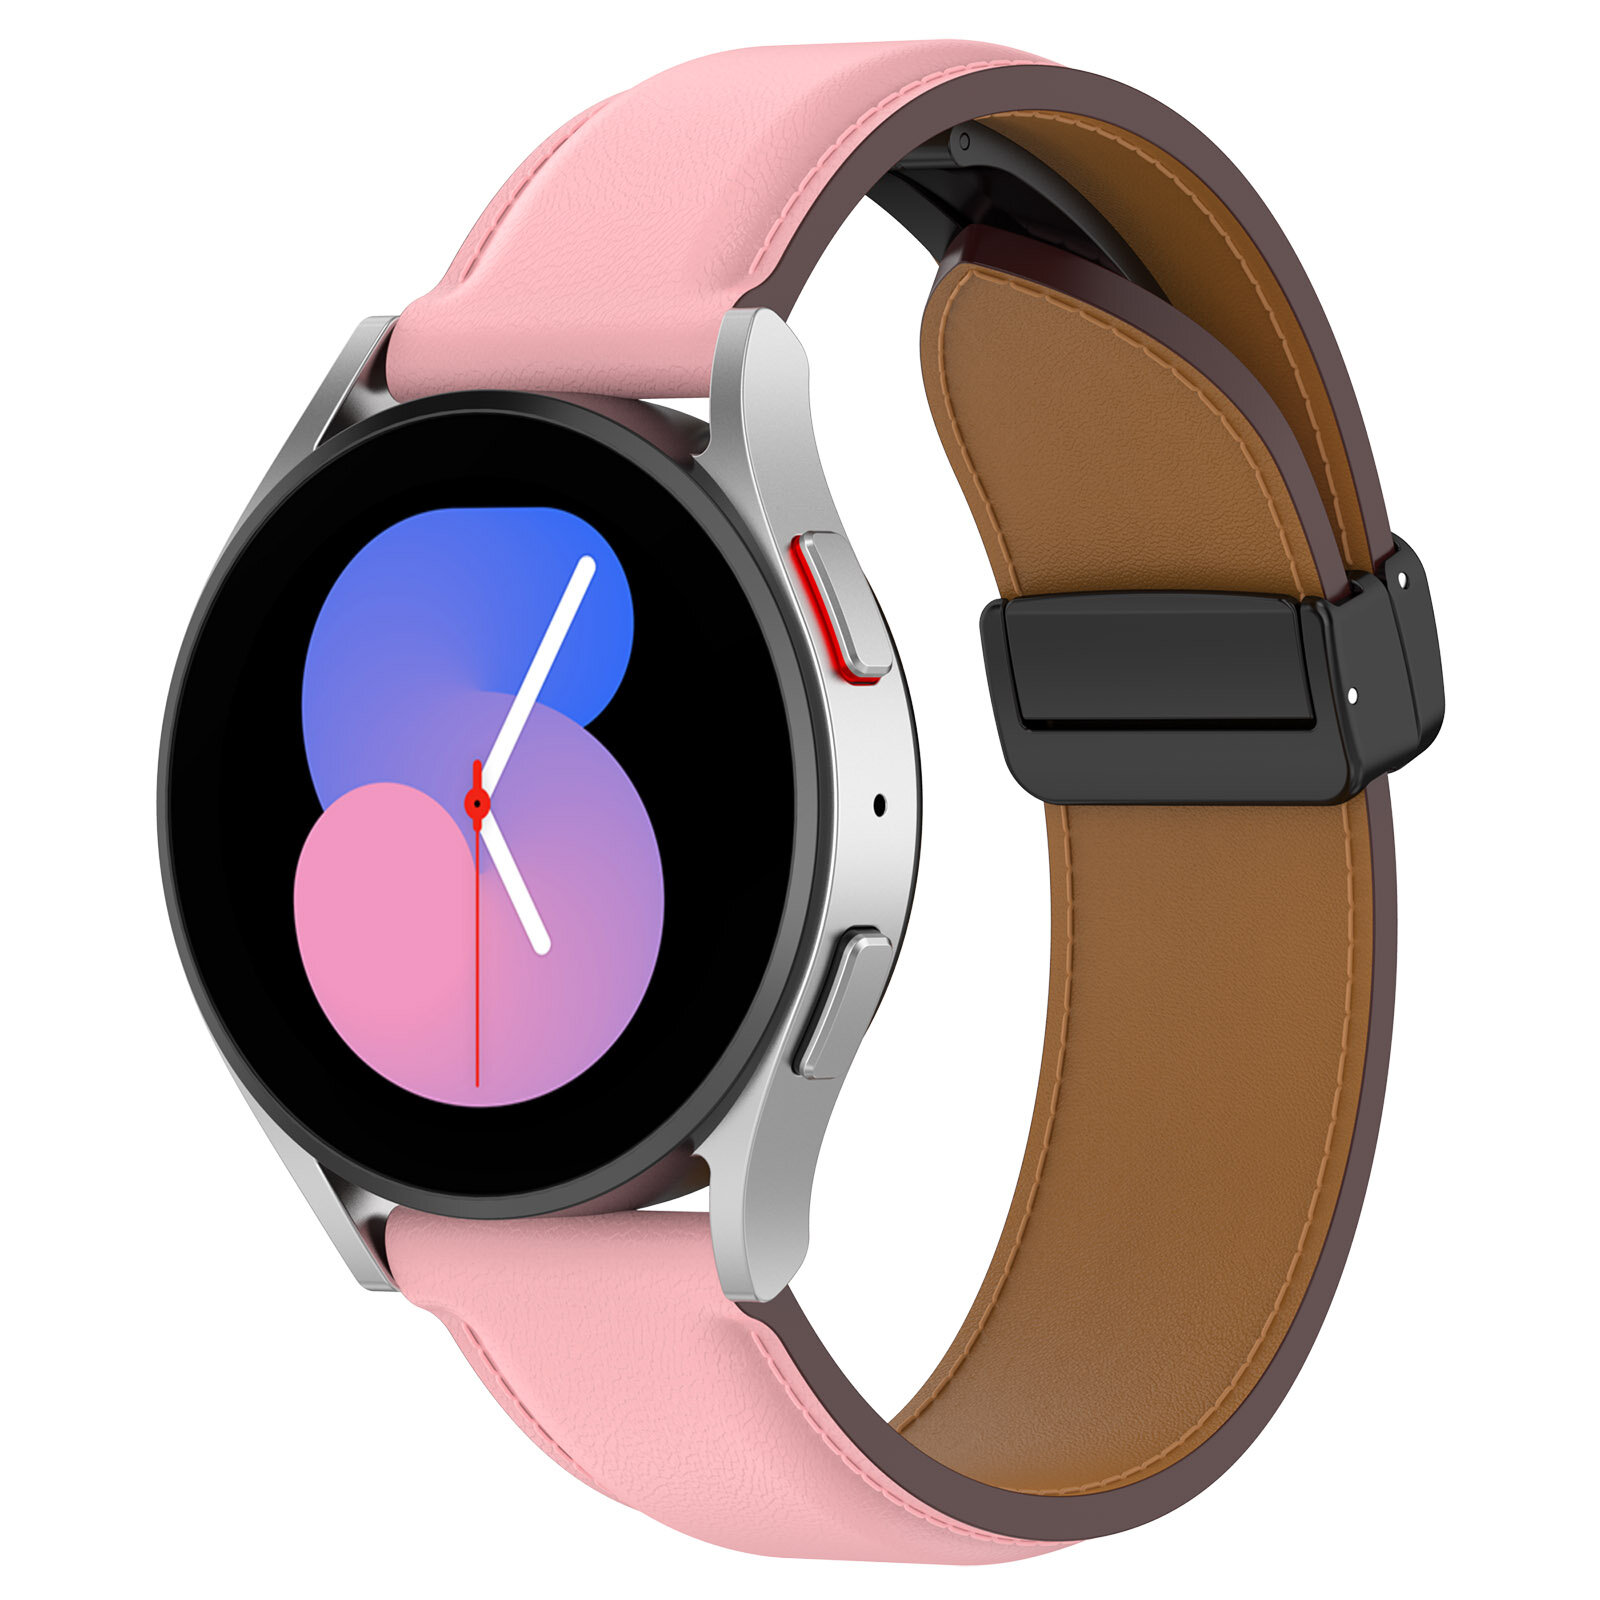 Двухцветный кожаный ремешок для Samsung Galaxy Watch, размер S, черно-розовый, серебристая пряжка